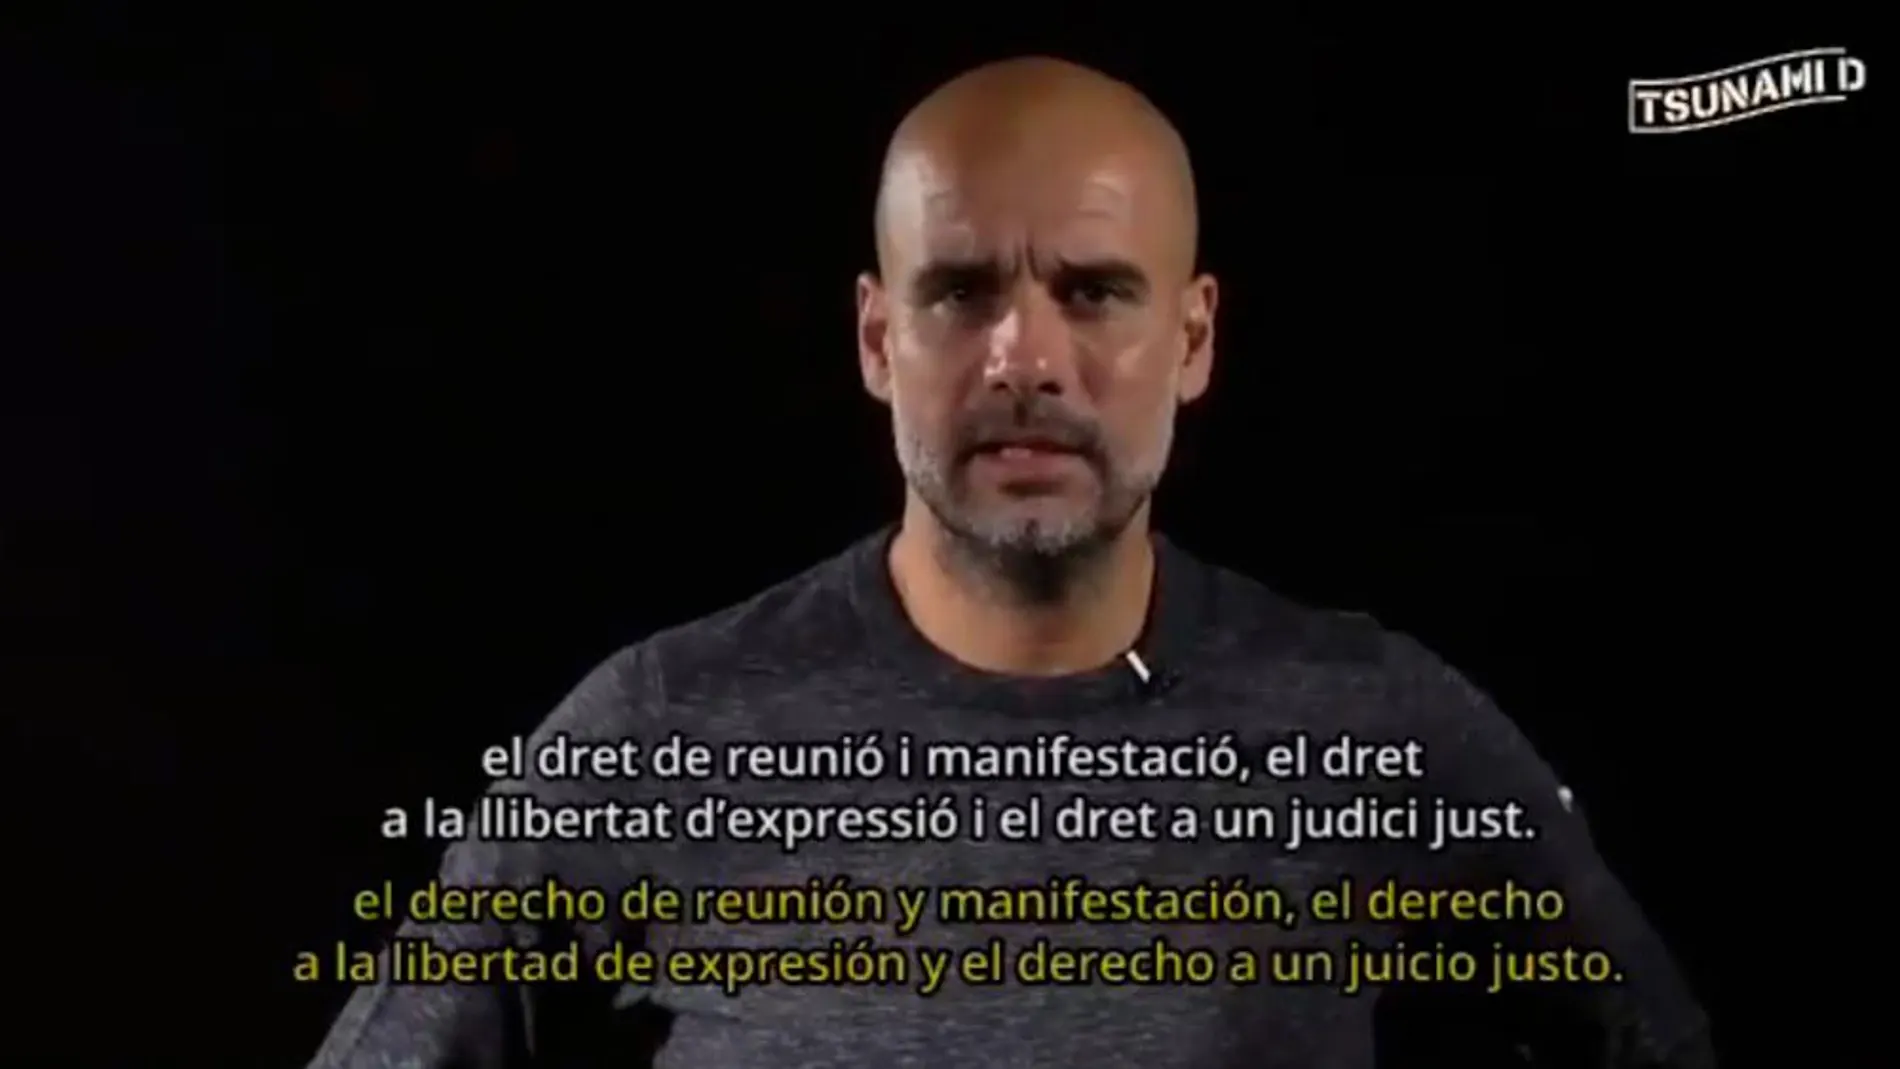 Pep Gurdiola, en un fotograma del vídeo promocional de Tsunami Democratic